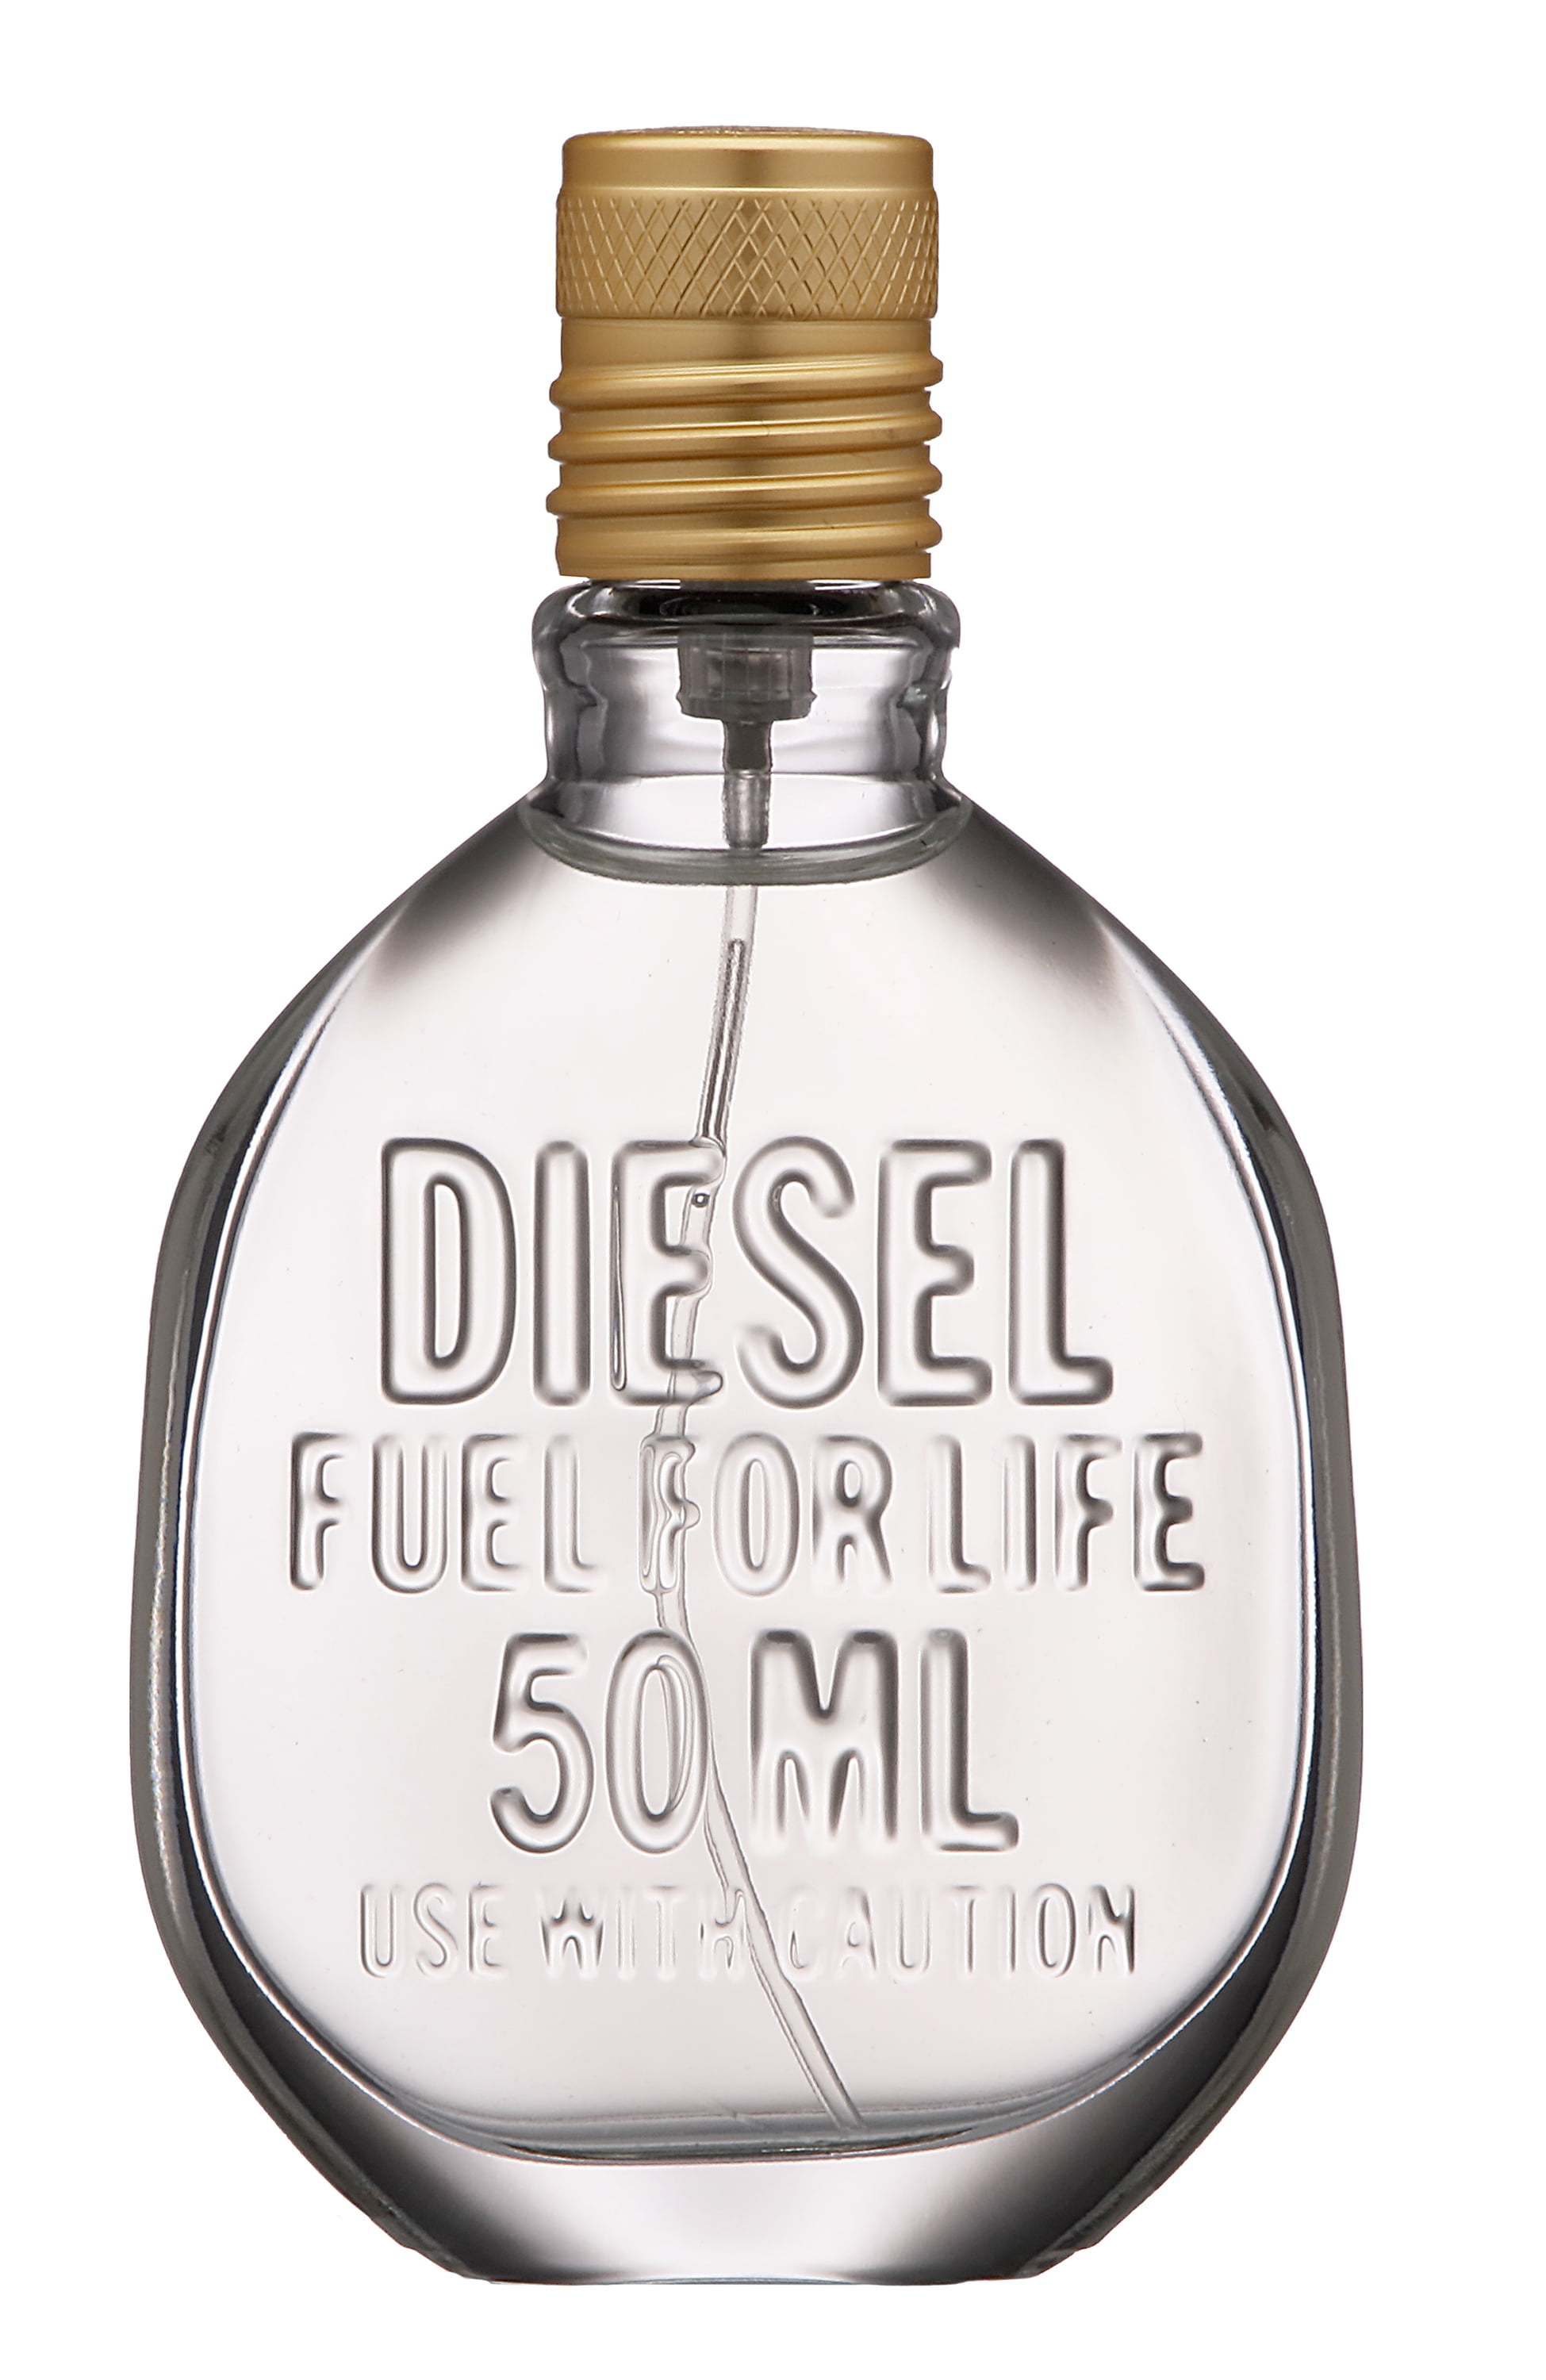 Diesel Fuel for Life Eau de Toilette, Cologne for Men, 1.7 Oz